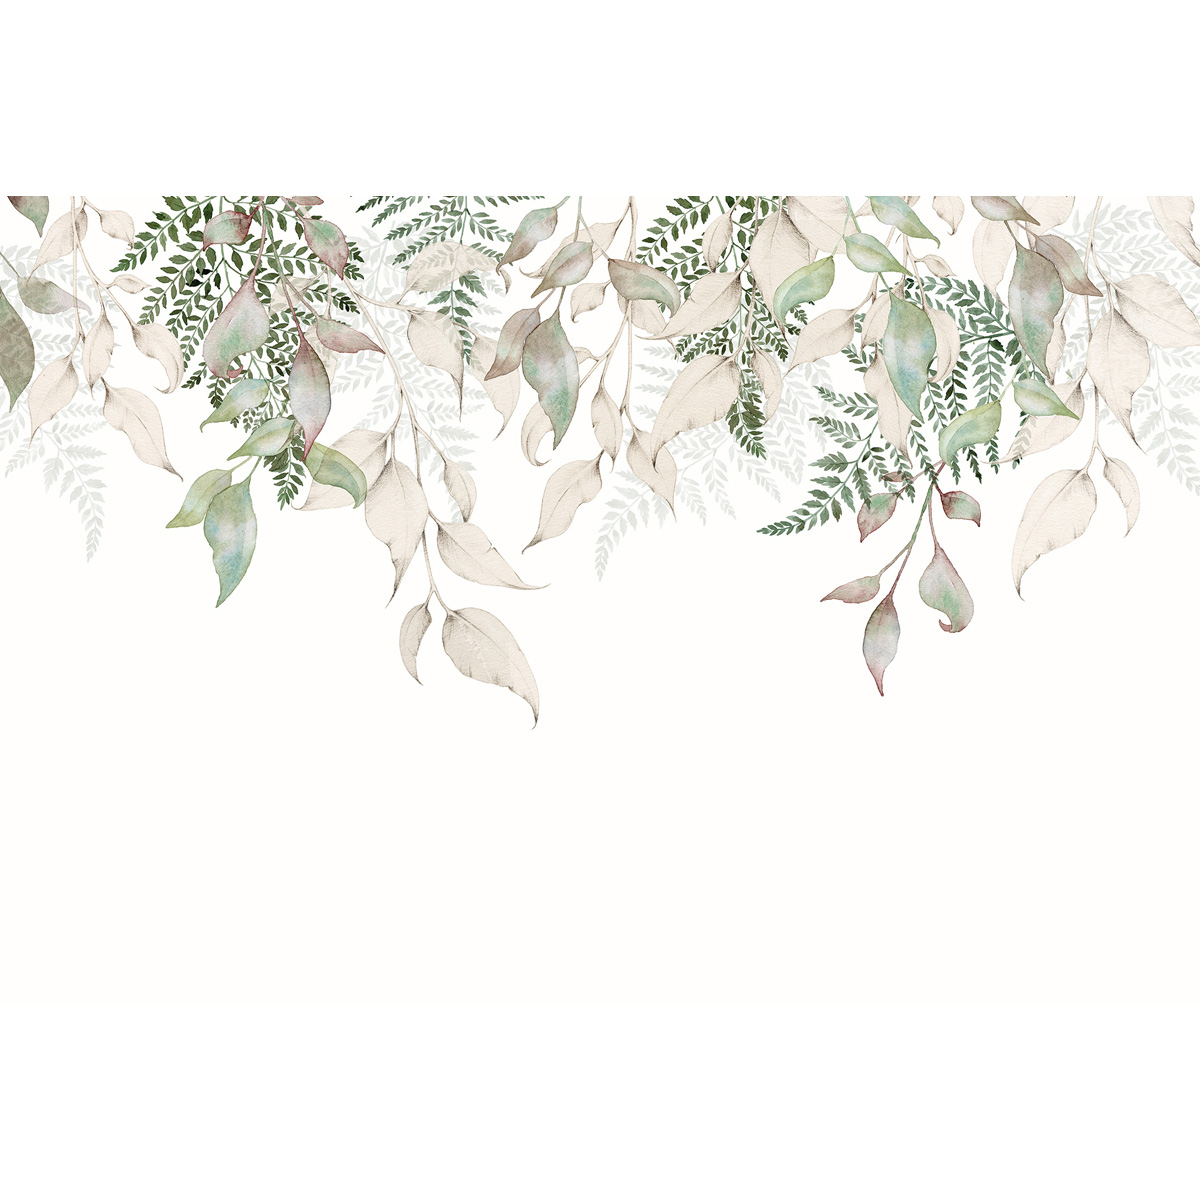 Papier peint panoramique Esprit nature - Collection Jessica LE DIVENAH - Acte-Deco